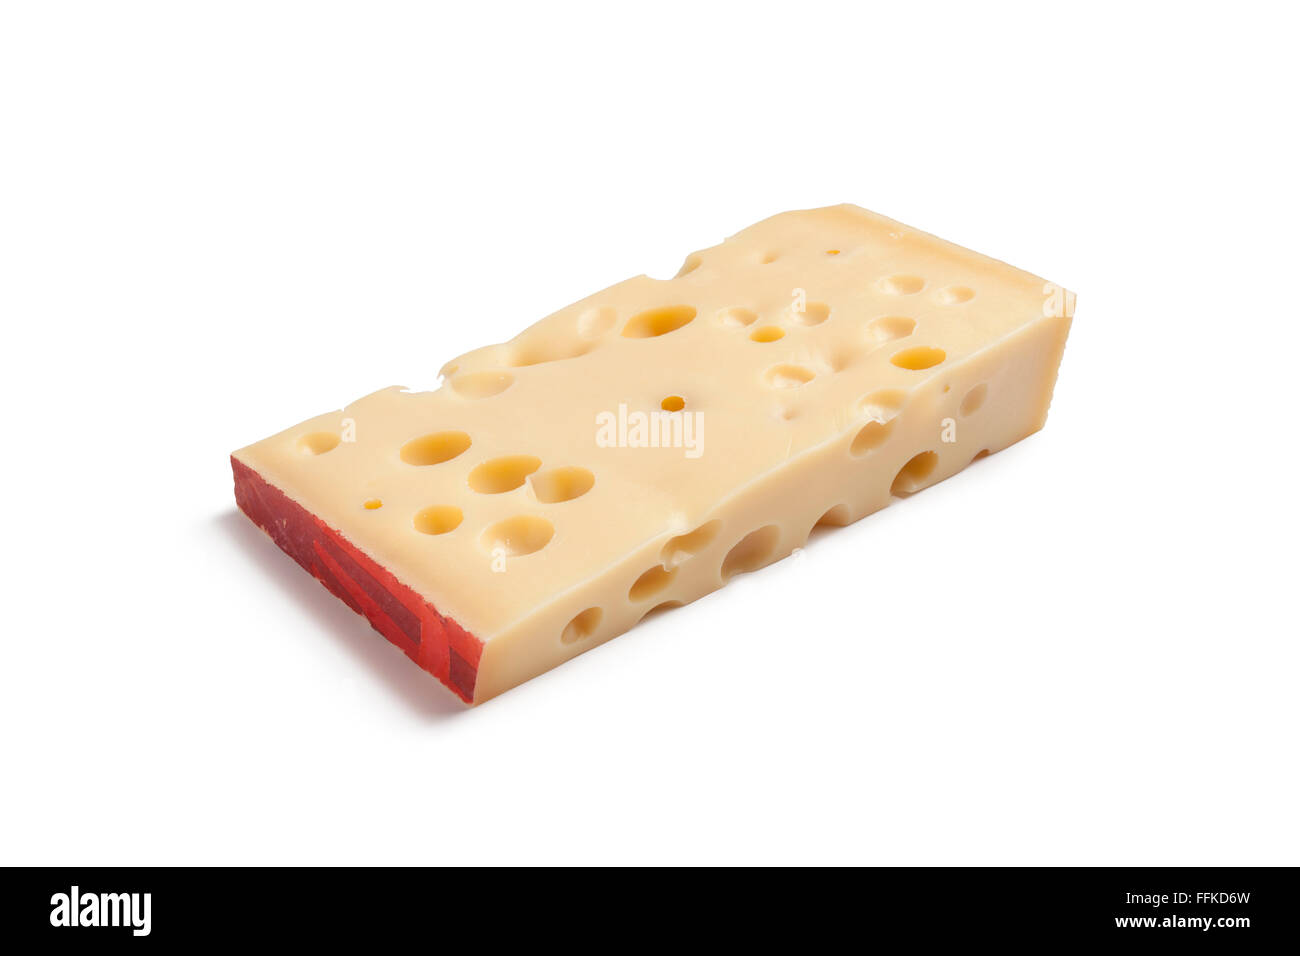 Morceau de fromage emmental suisse sur fond blanc Banque D'Images